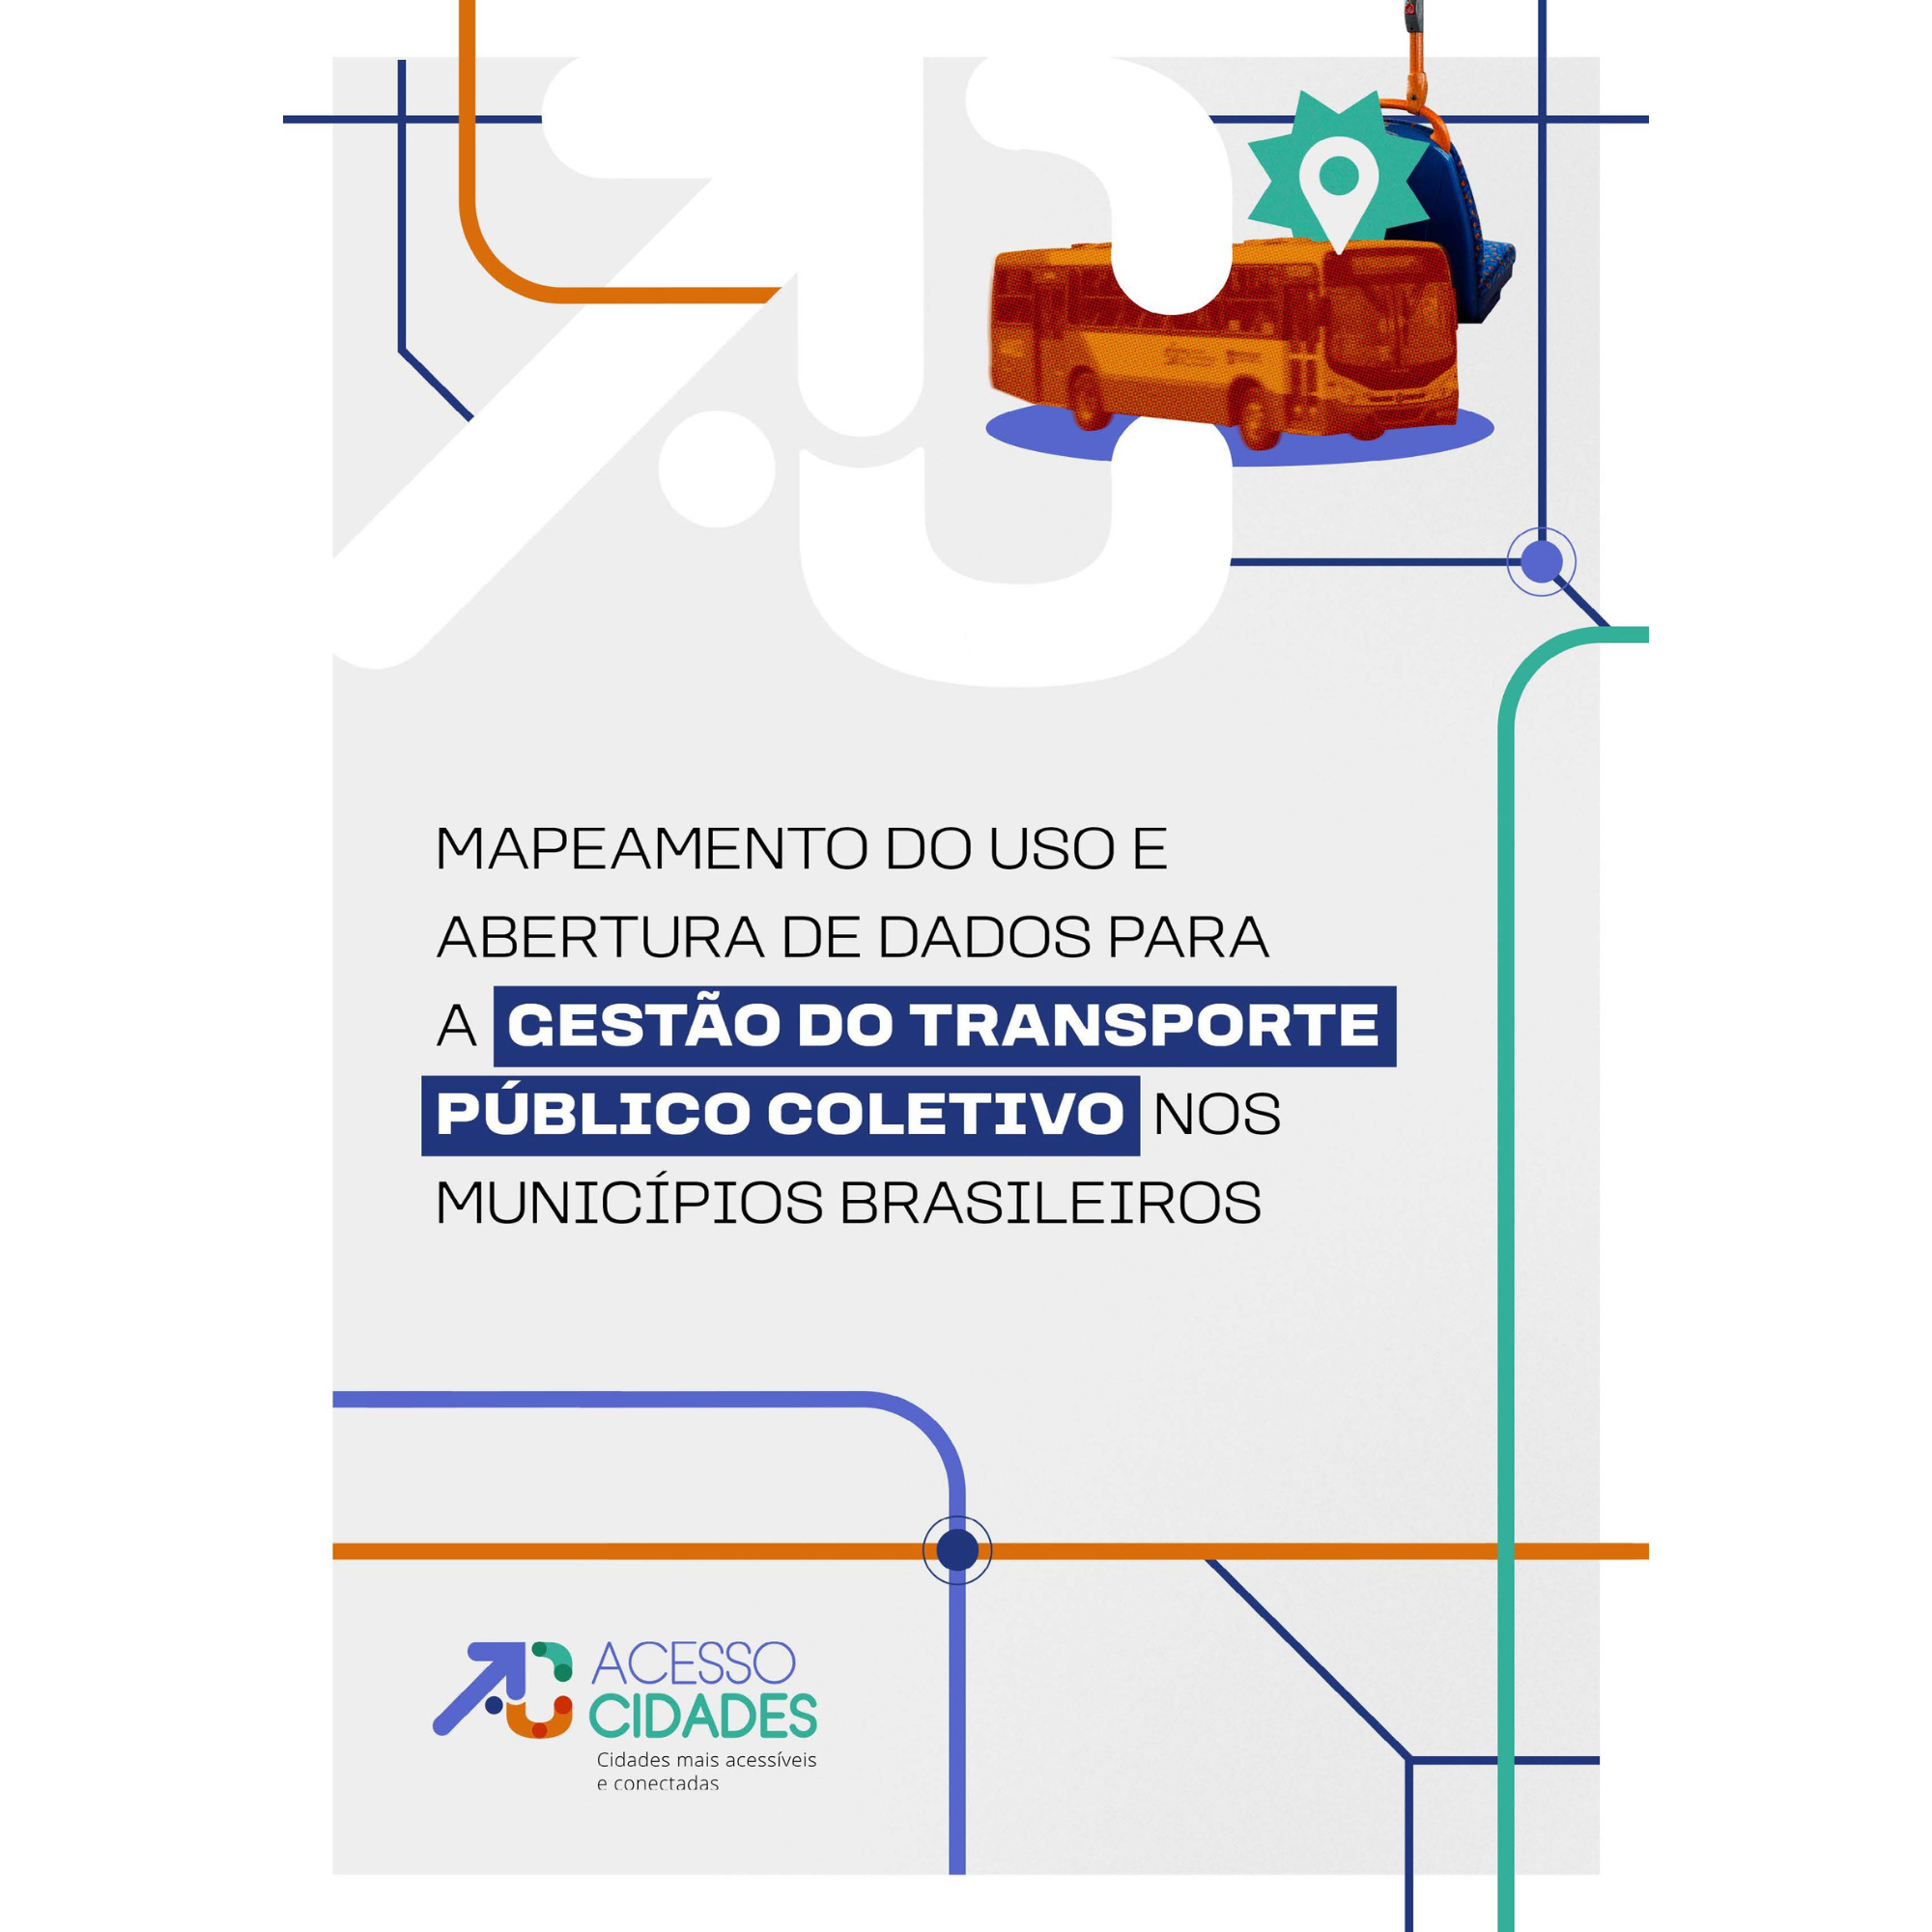 Mapeamento do uso e abertura de dados para a gestão do transporte público coletivo nos municípios brasileiros